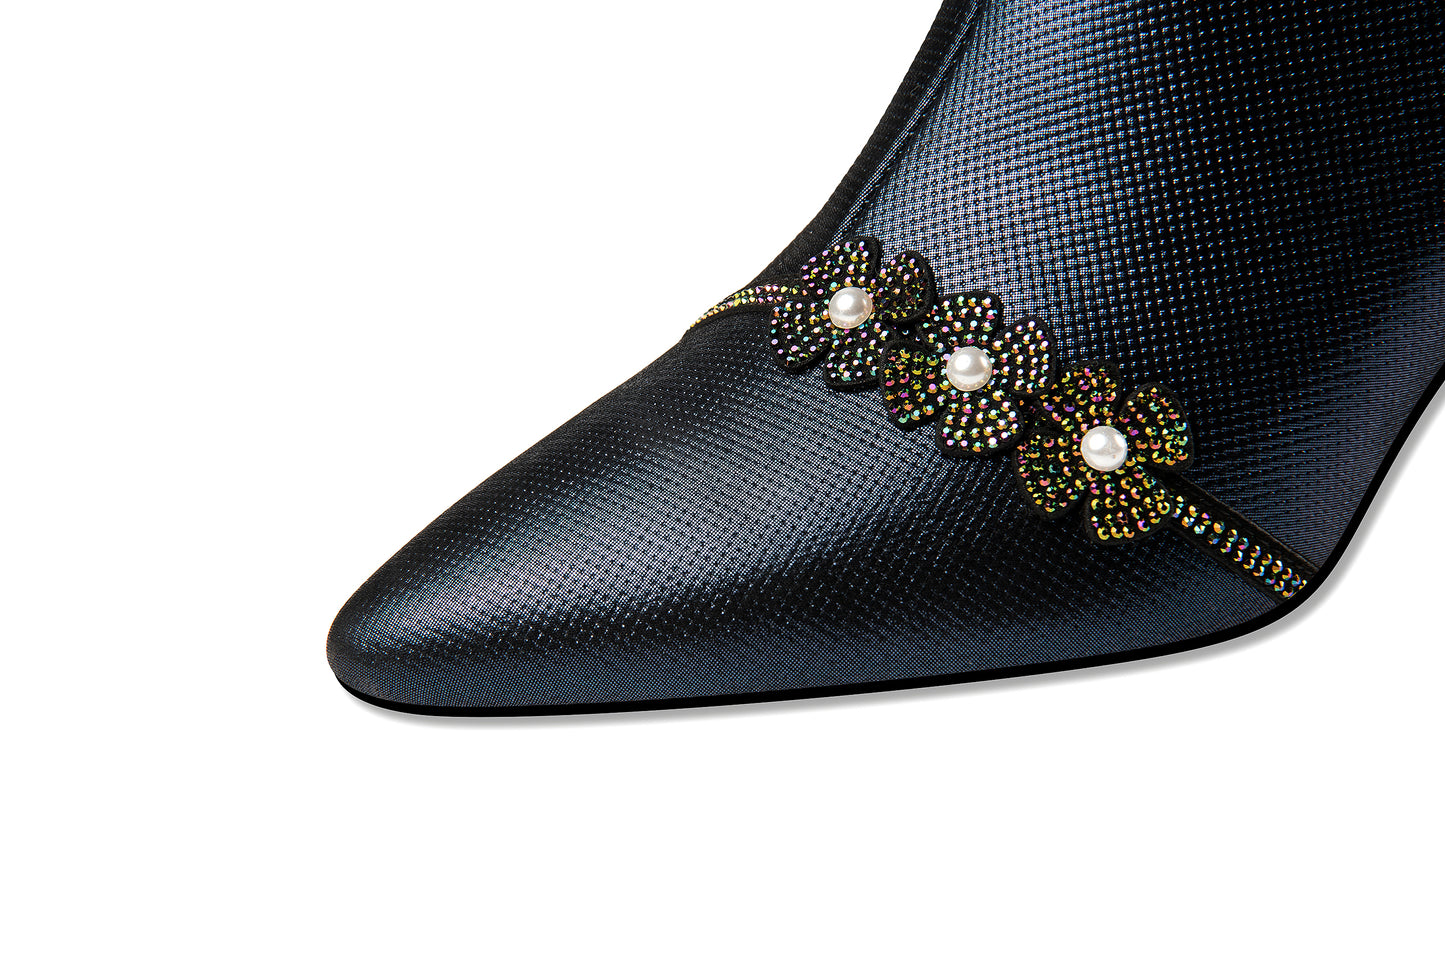 TinaCus Handmade Women's Genuine Leather Rhinestones Pearls Flowers Side Zipper Pointed Toe Mid Spool Heel Pumps